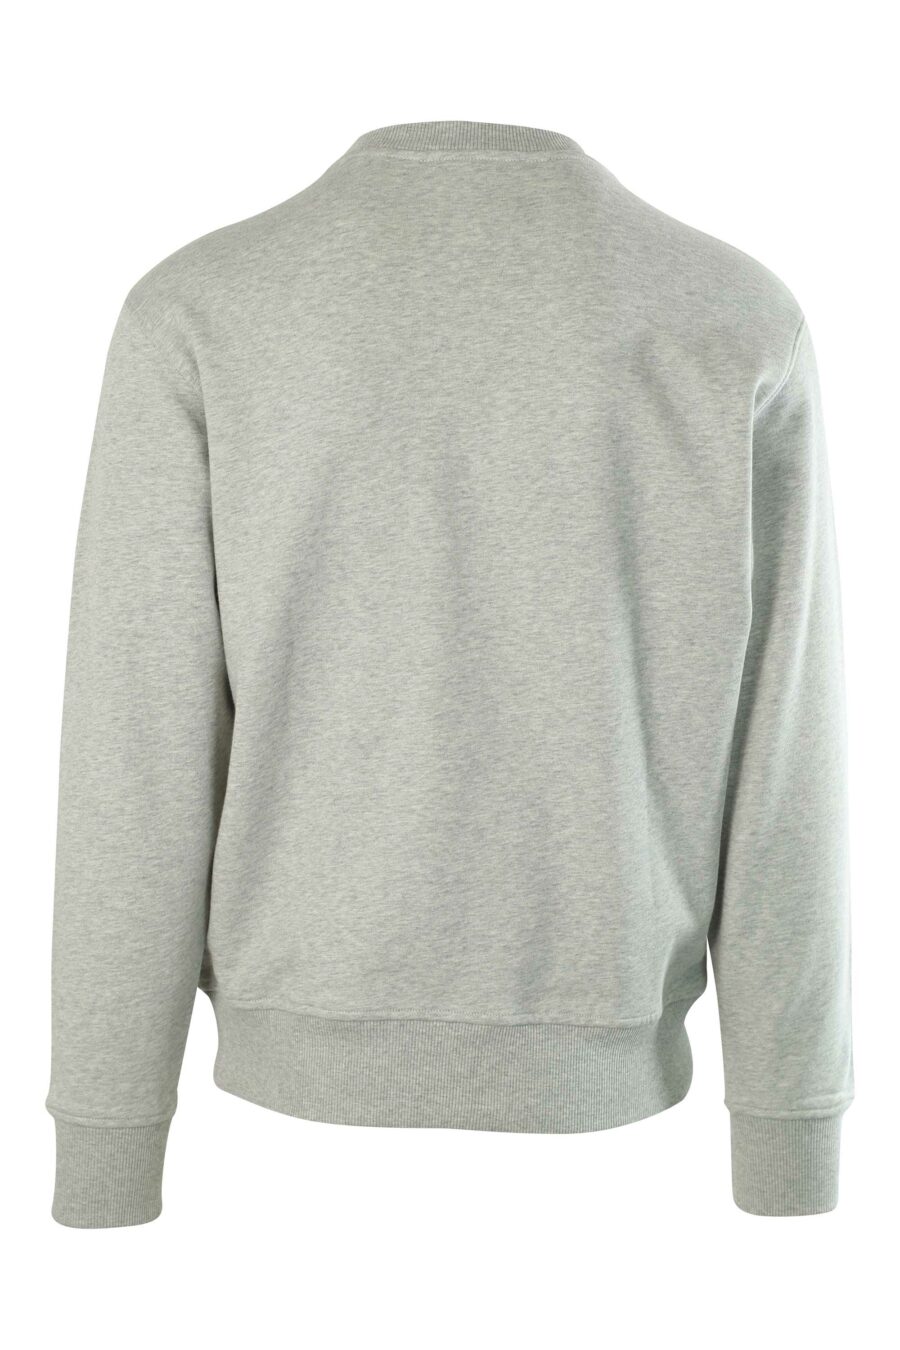 Sweatshirt cinzenta com logótipo entrelaçado verde - 8052019239027 2